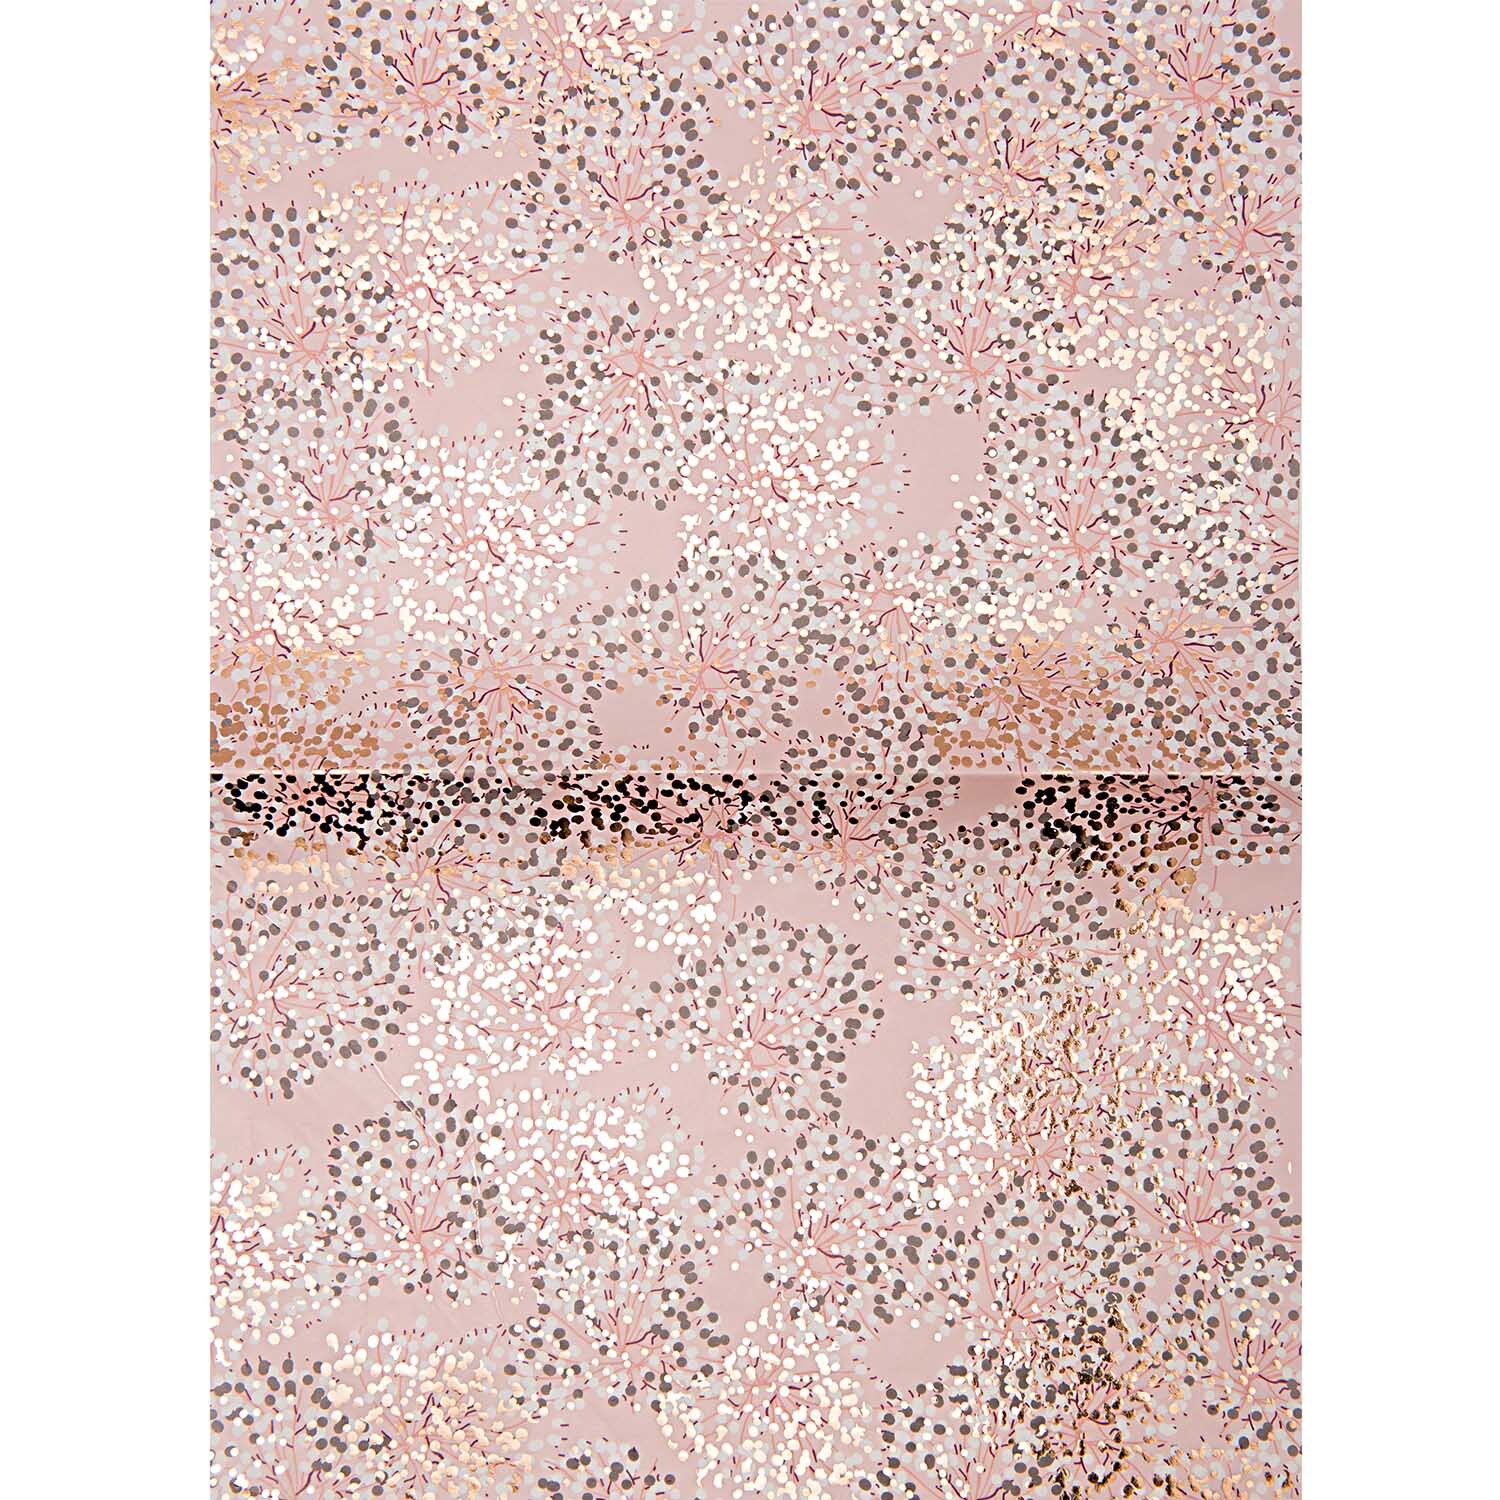 Paper Patch Papier Buissons rosa 30x42cm Hot Foil